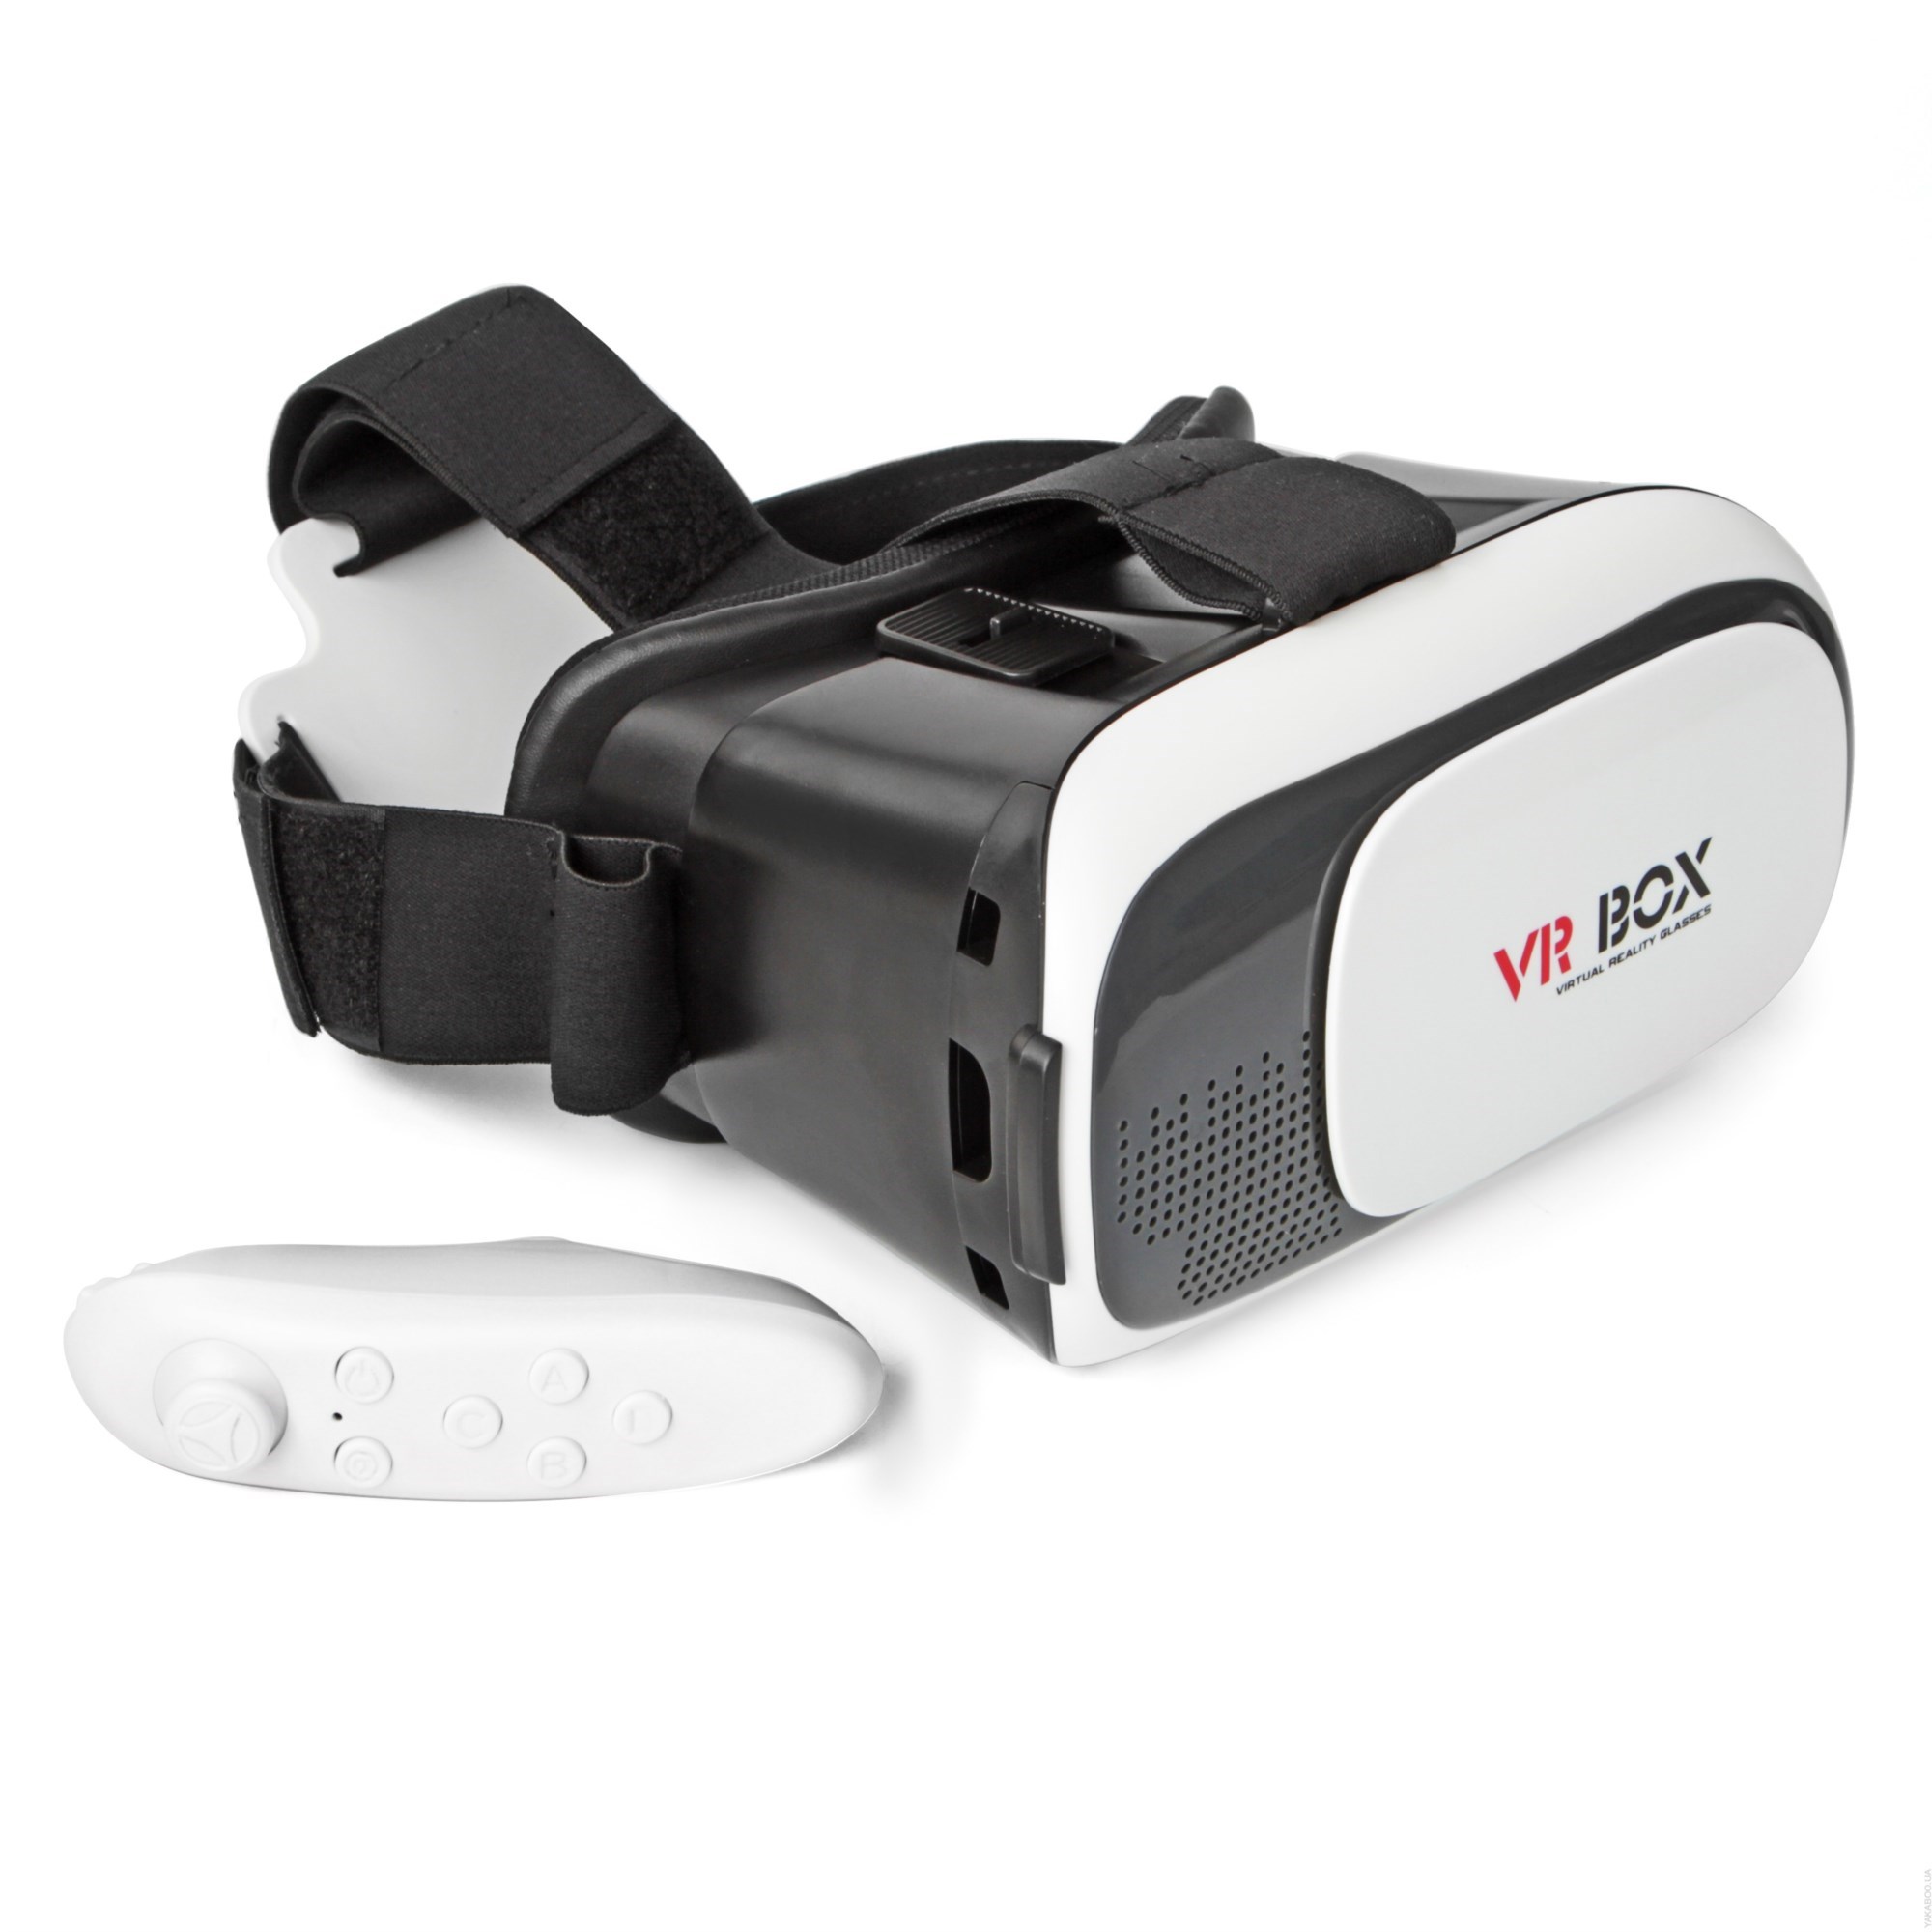 Виар очки реальности. Очки виртуальной реальности VR Box. VR Box VR 2.0. Очки виртуальной реальности VR Box 3d Virtual reality Glasses 2.0. 3d очки VR-Box v7.